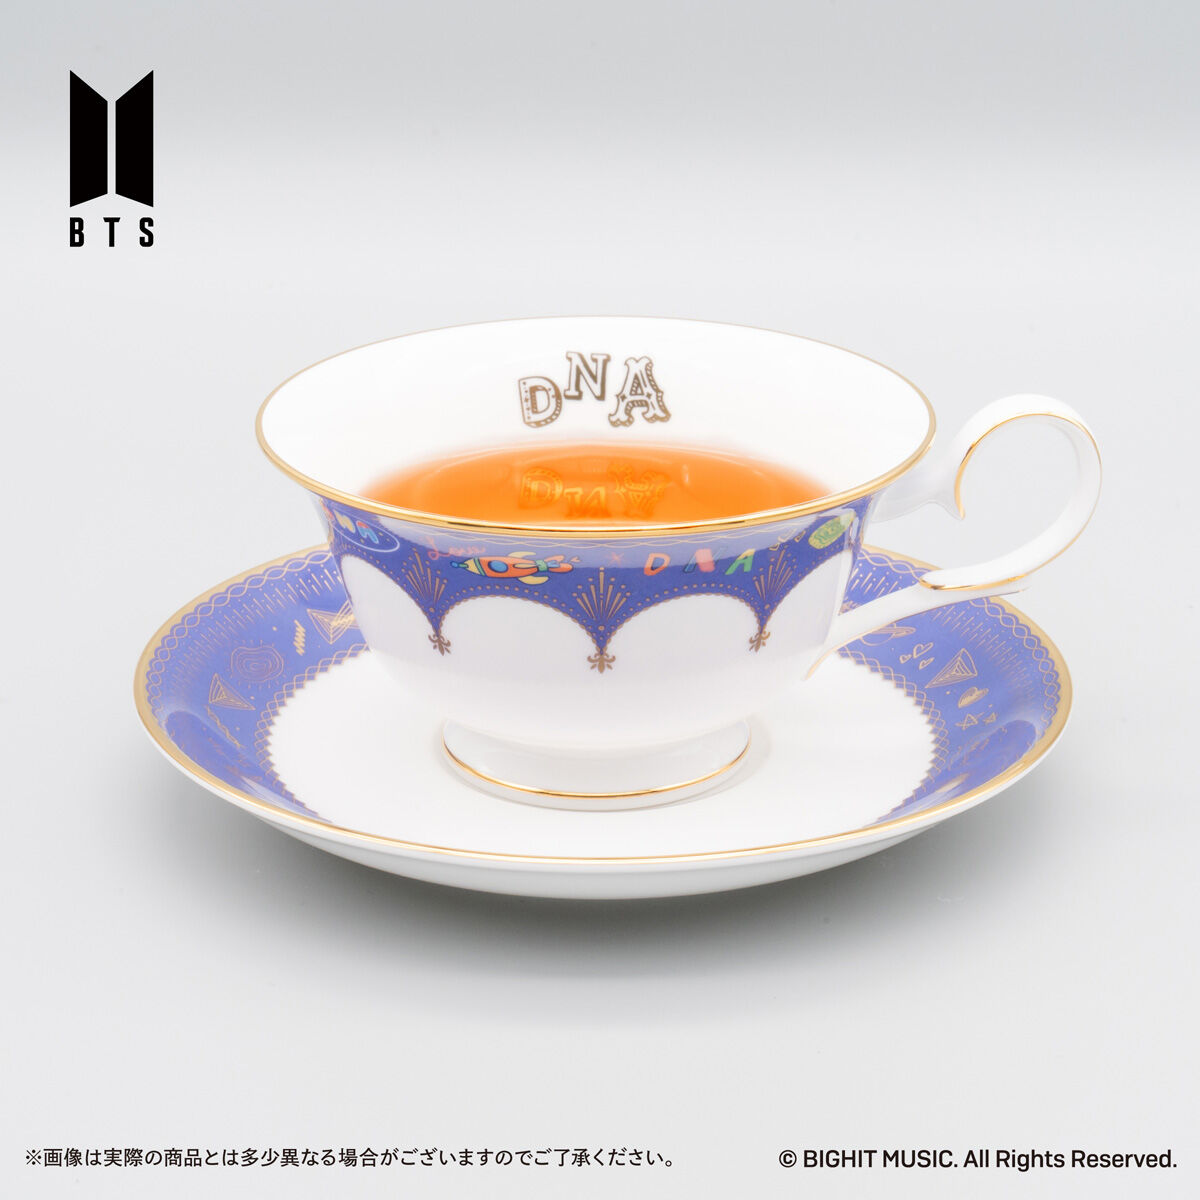 Noritake Cup＆Saucer set BTS Music Theme DNA ver./ MIC Drop